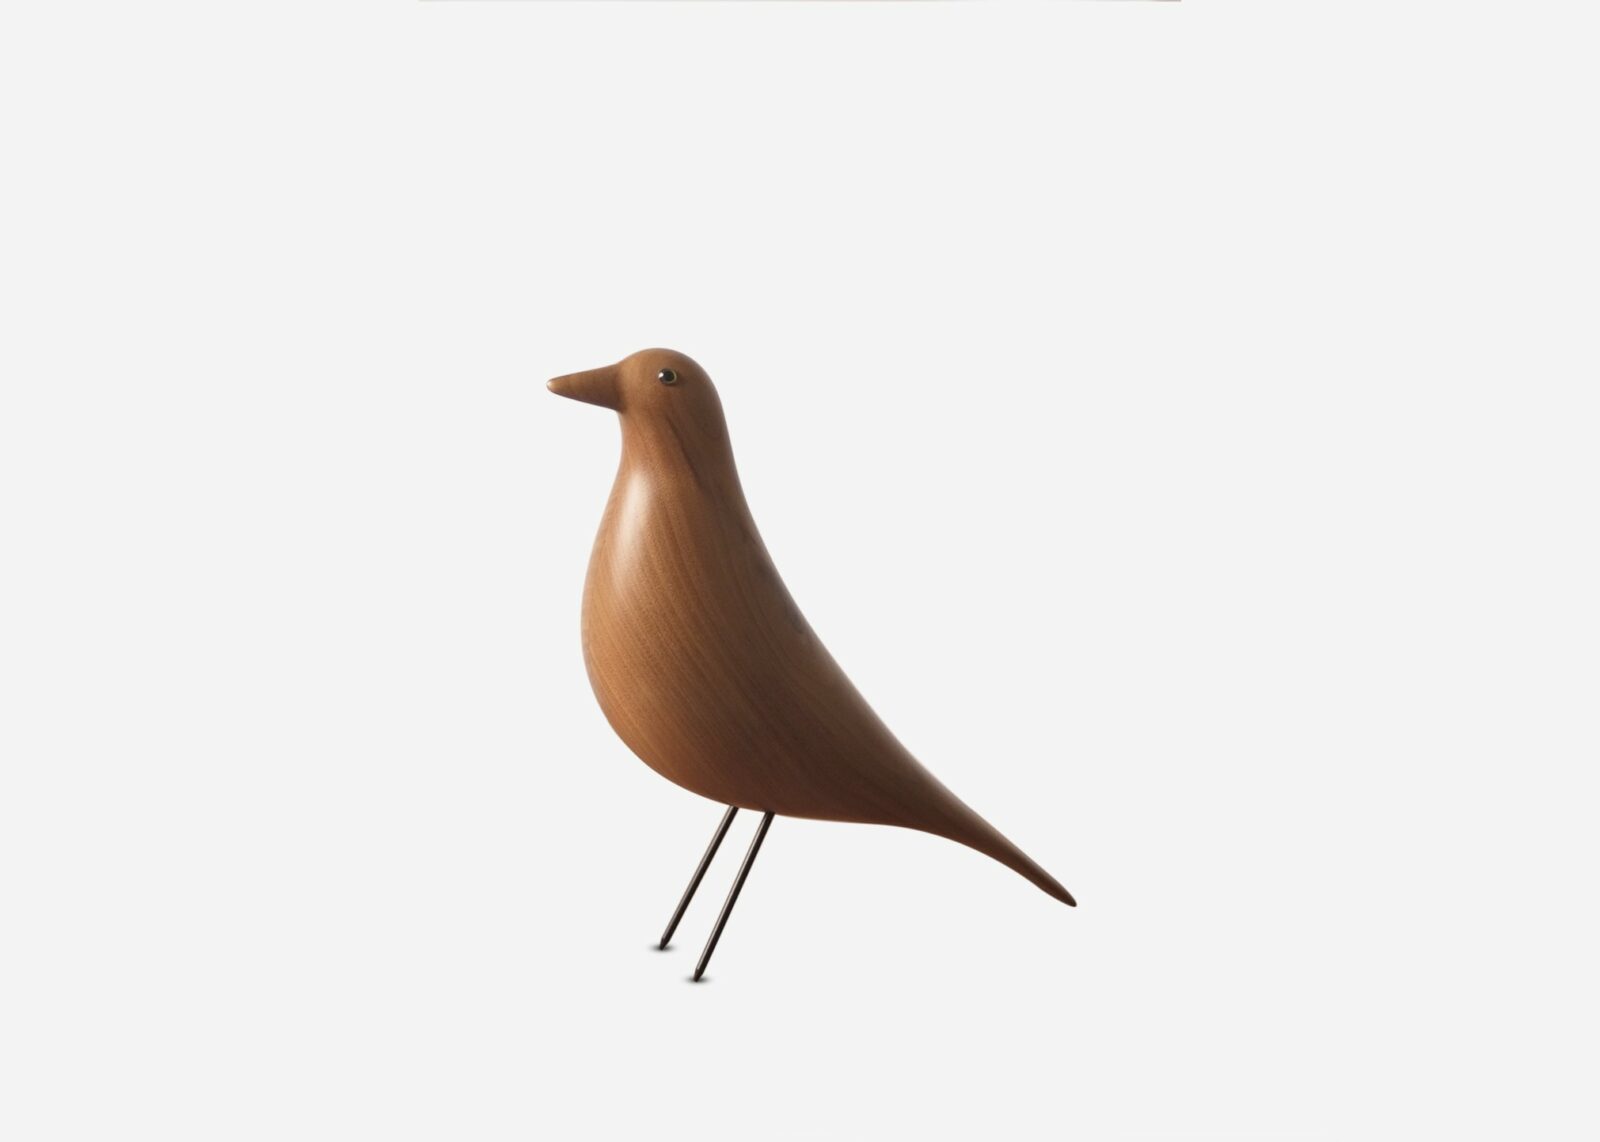 dimensiones en cm y pulgadas del Eames house bird. Pájaro